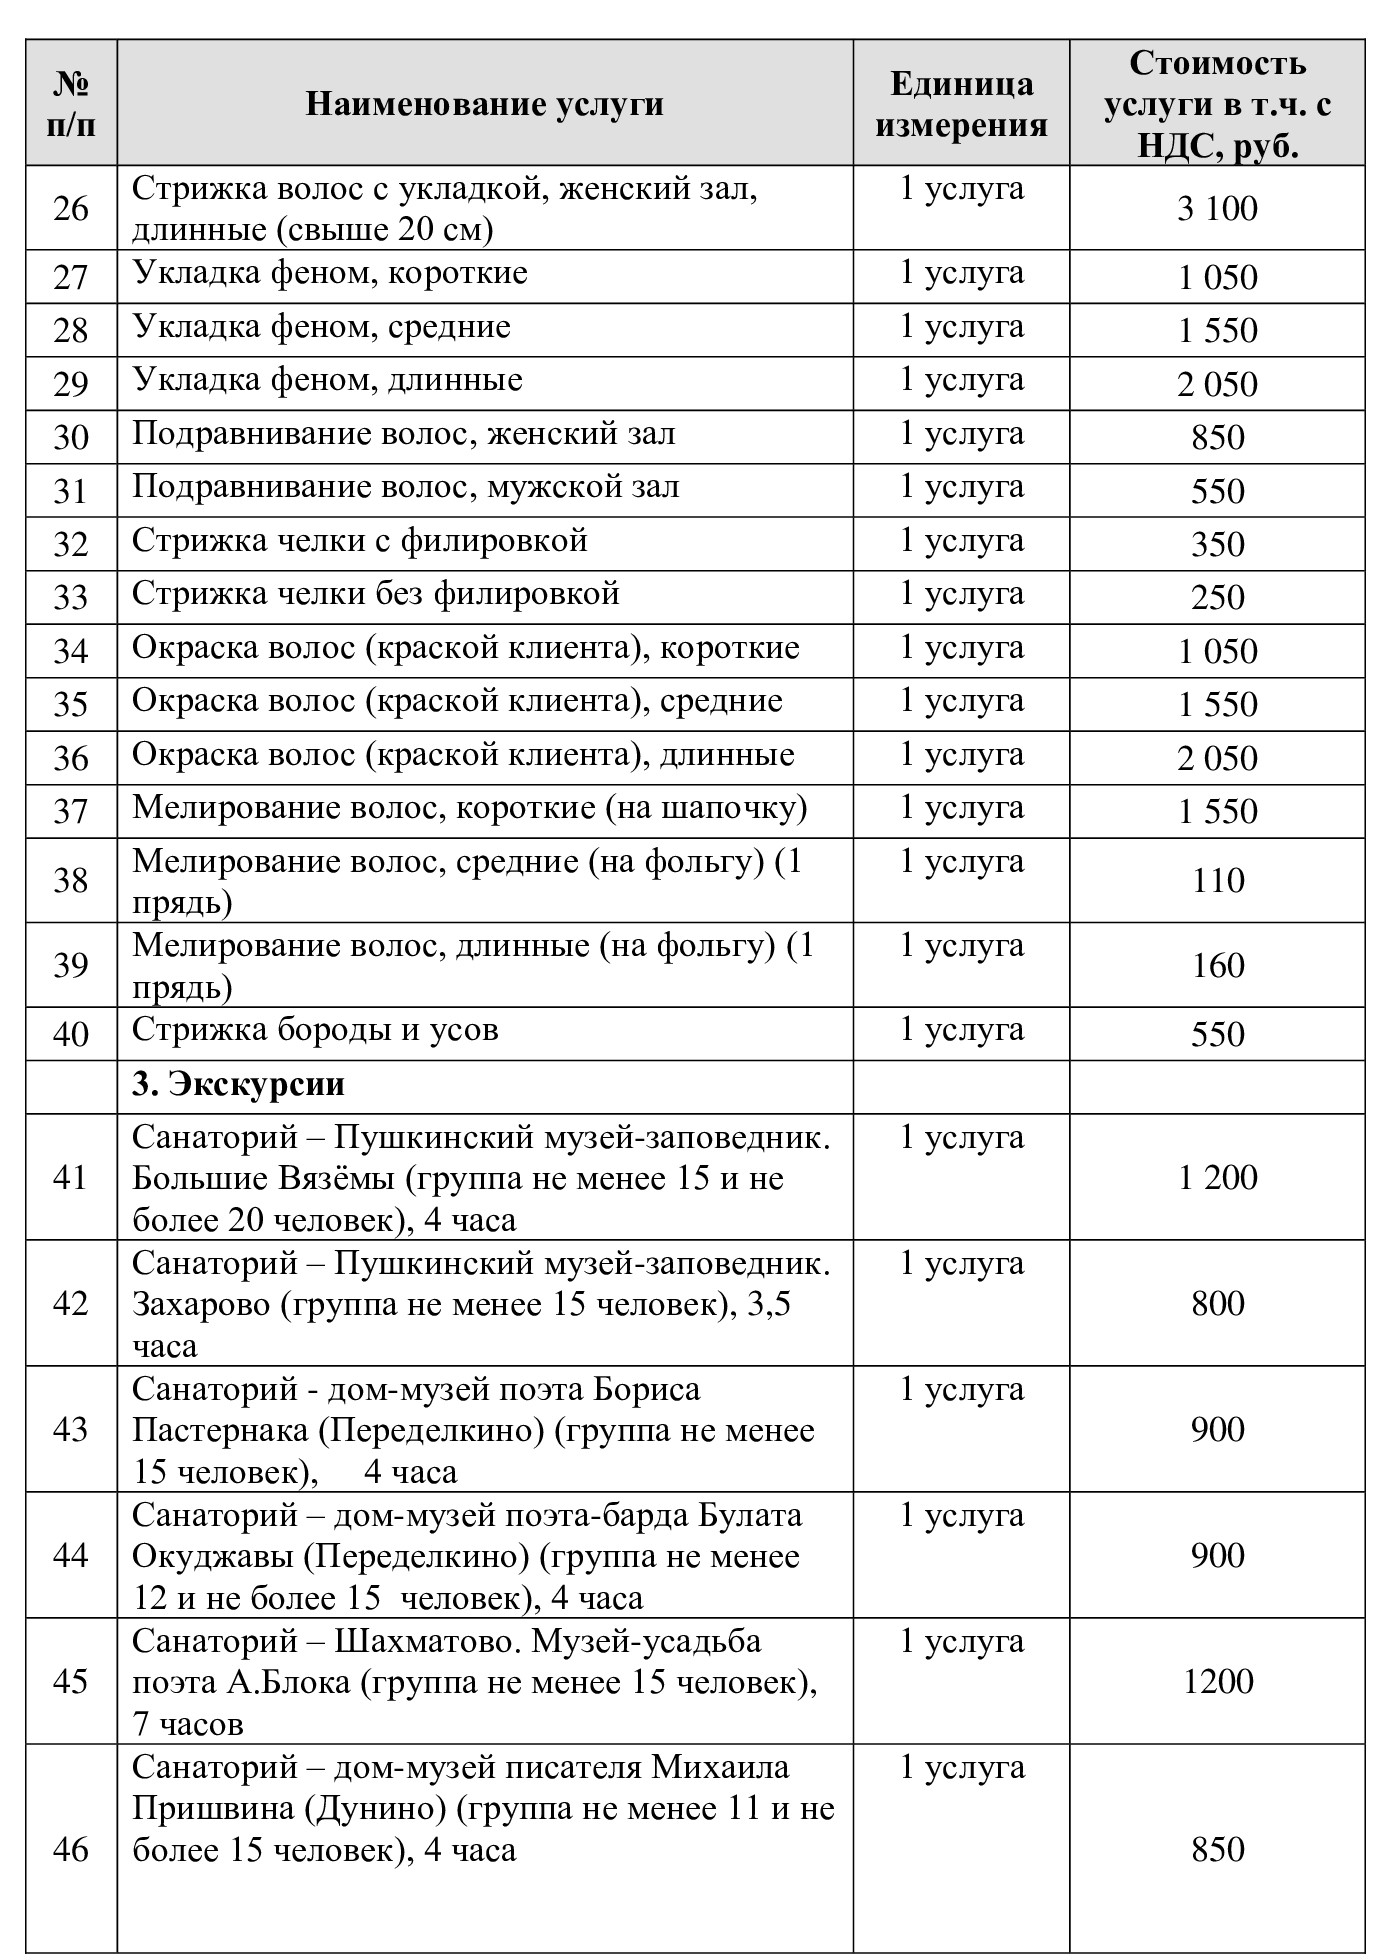 Цены на услуги в Санаторий "Введенское" (Звенигород)